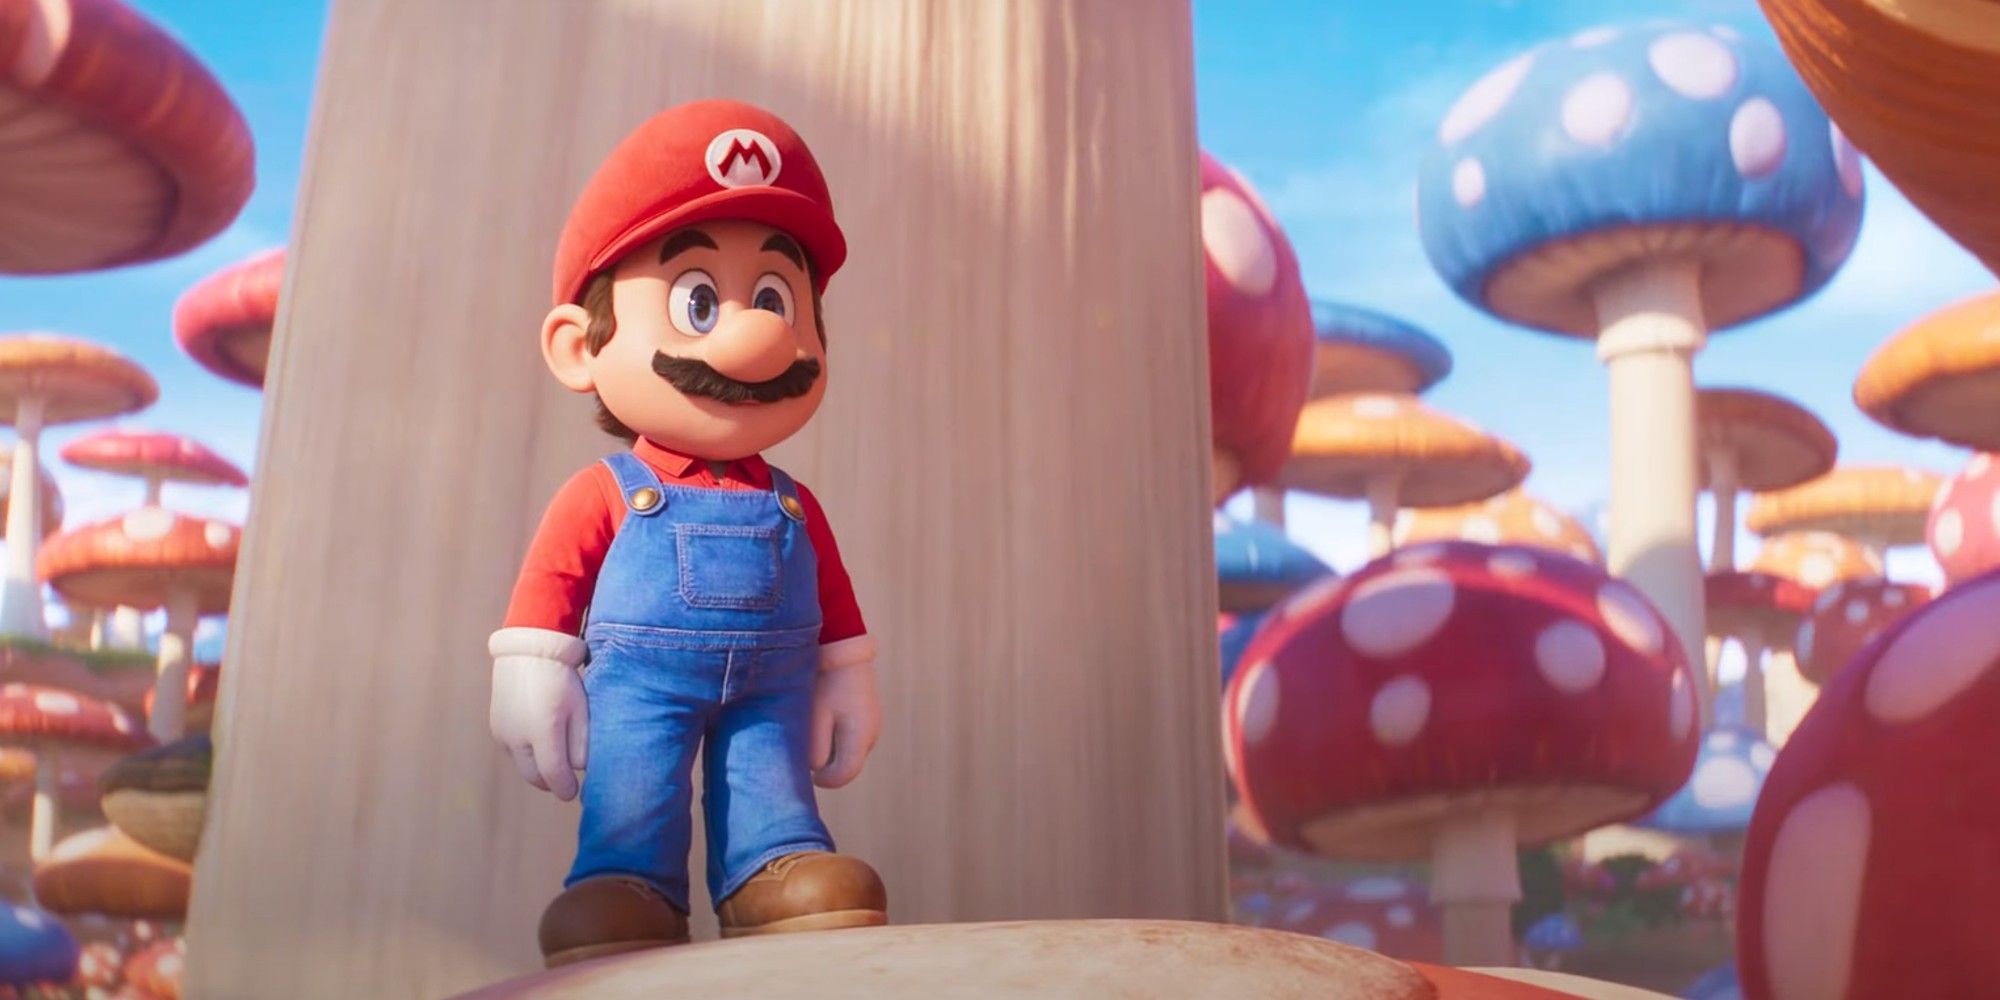 Iluminação Super Mario Bros. Chris Pratt como Mario na Floresta de Cogumelos Gigantes